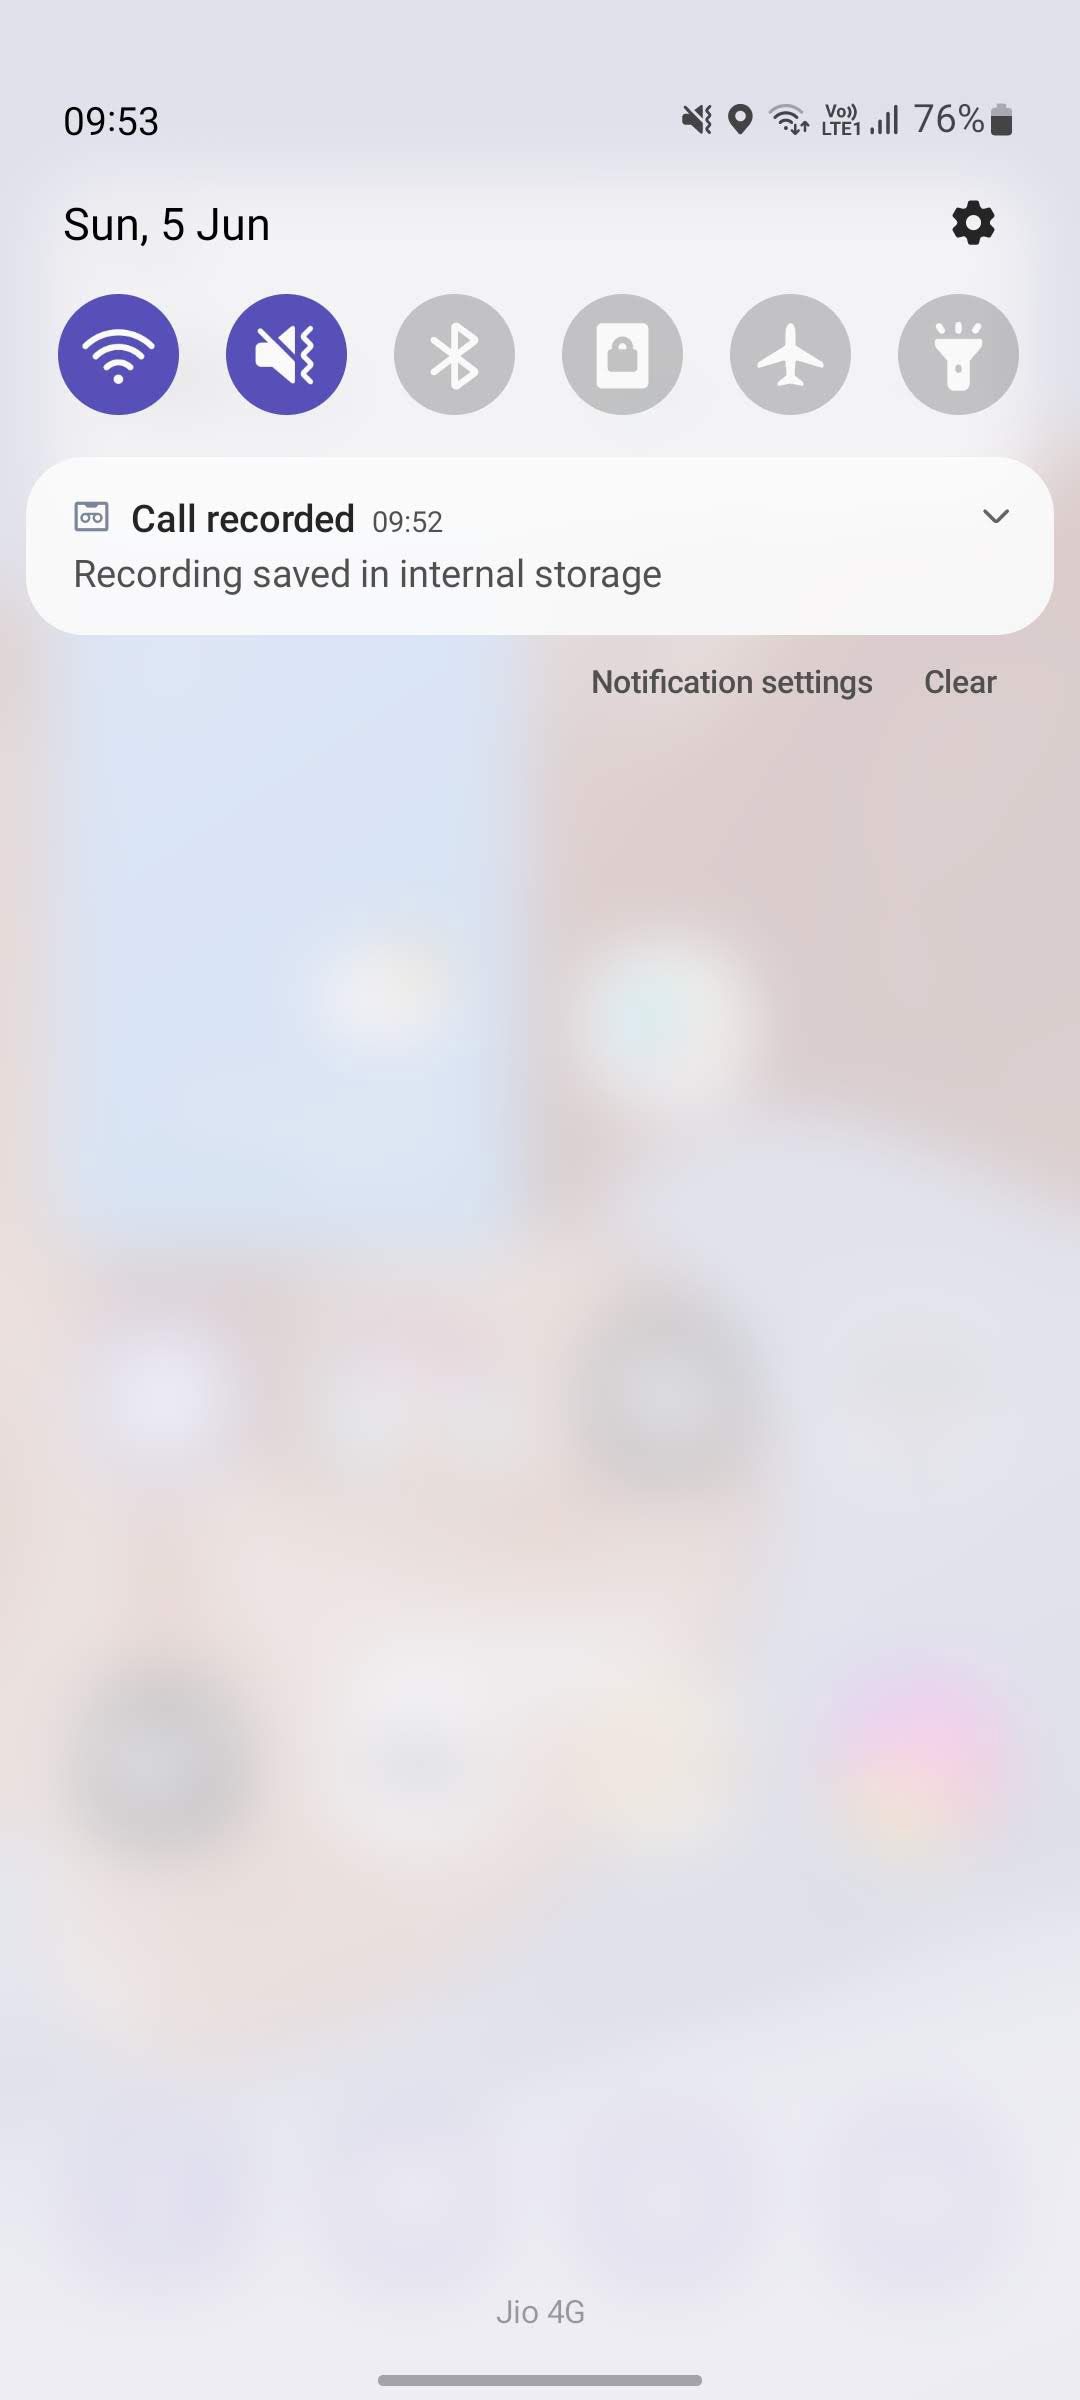 Captura de tela mostrando uma chamada gravada na aba de notificações de um telefone Samsung